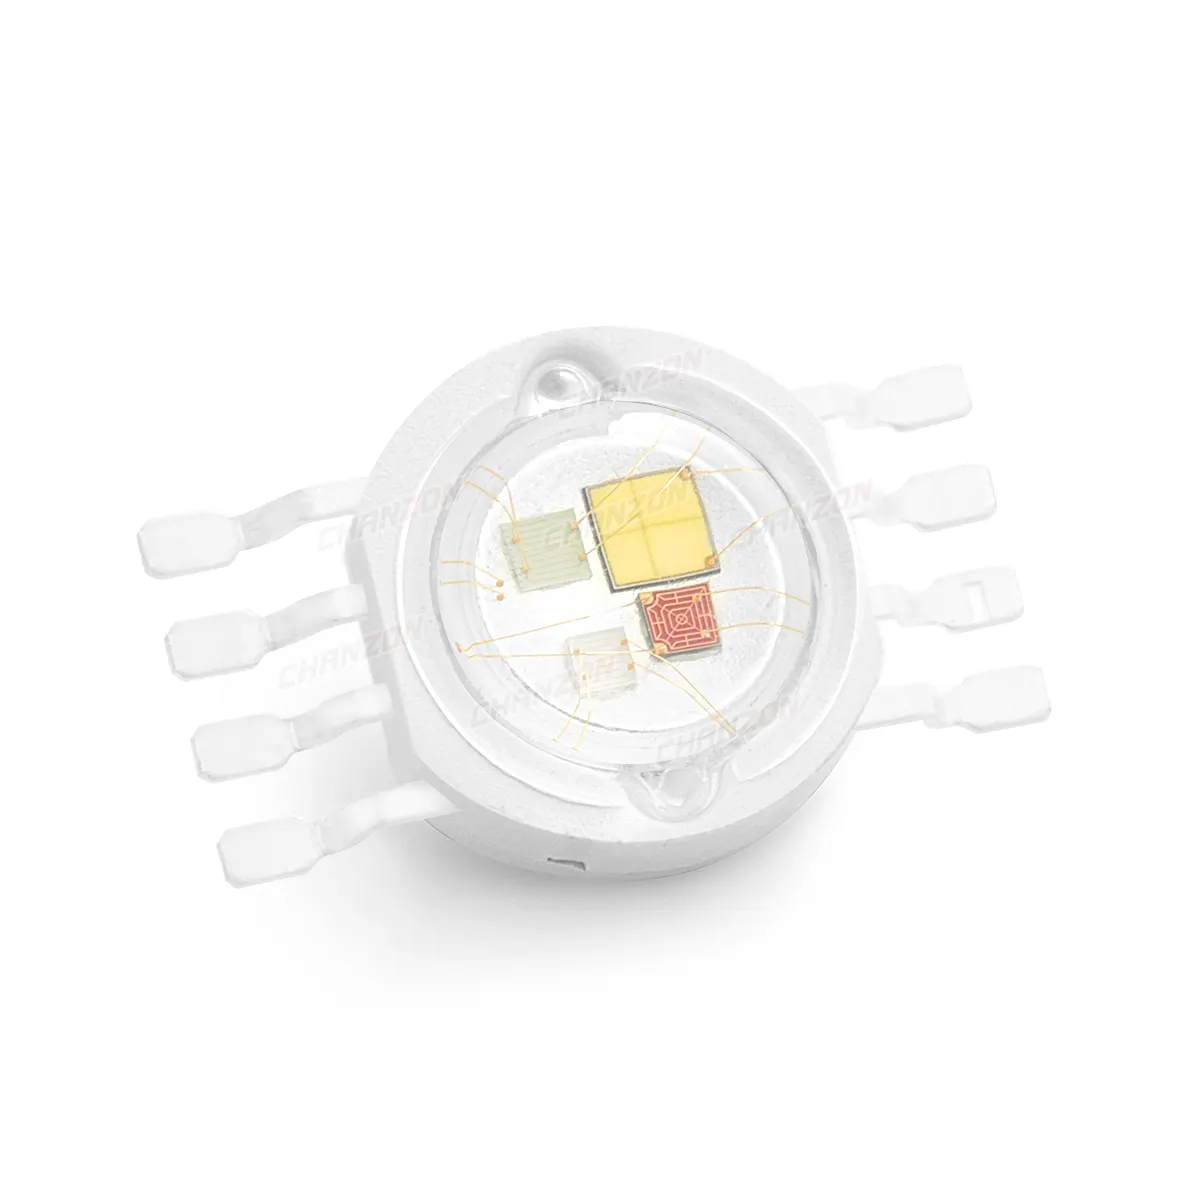 LED Chanzon Chip Daya Tinggi RGBW 4W Bola Lampu Merah Hijau Biru Putih Super Terang dengan 8 Pin dengan Kawat Emas Ganda